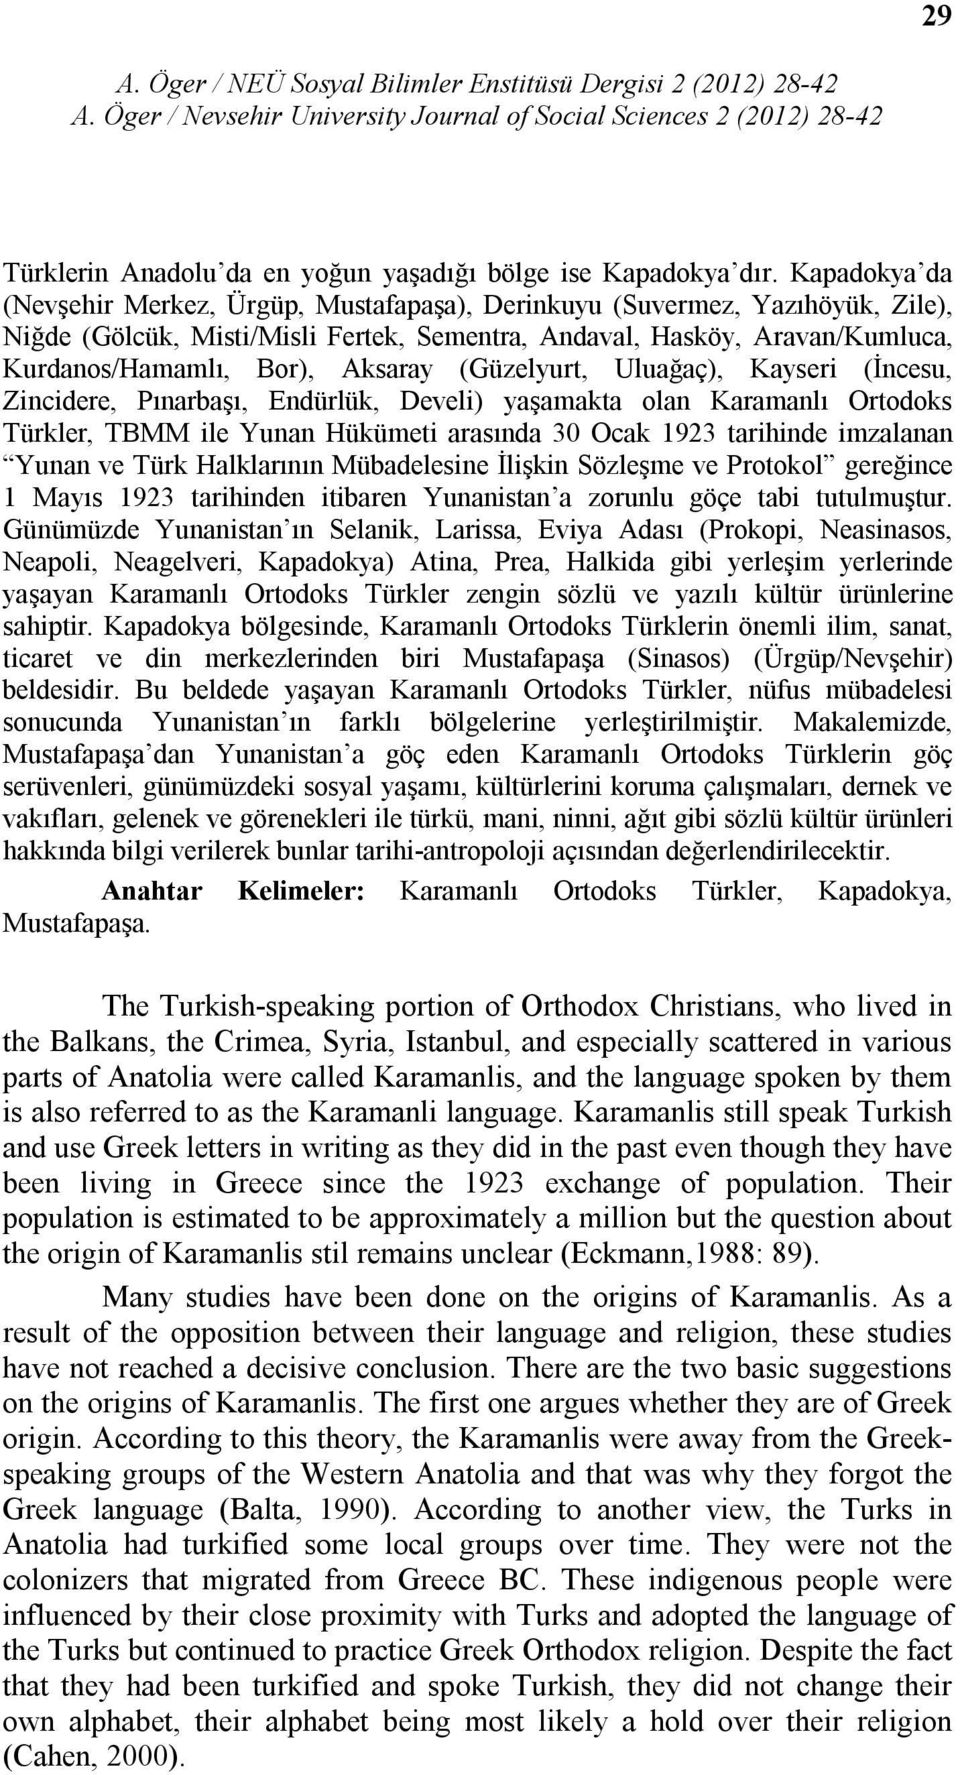 Aksaray (Güzelyurt, Uluağaç), Kayseri (İncesu, Zincidere, Pınarbaşı, Endürlük, Develi) yaşamakta olan Karamanlı Ortodoks Türkler, TBMM ile Yunan Hükümeti arasında 30 Ocak 1923 tarihinde imzalanan